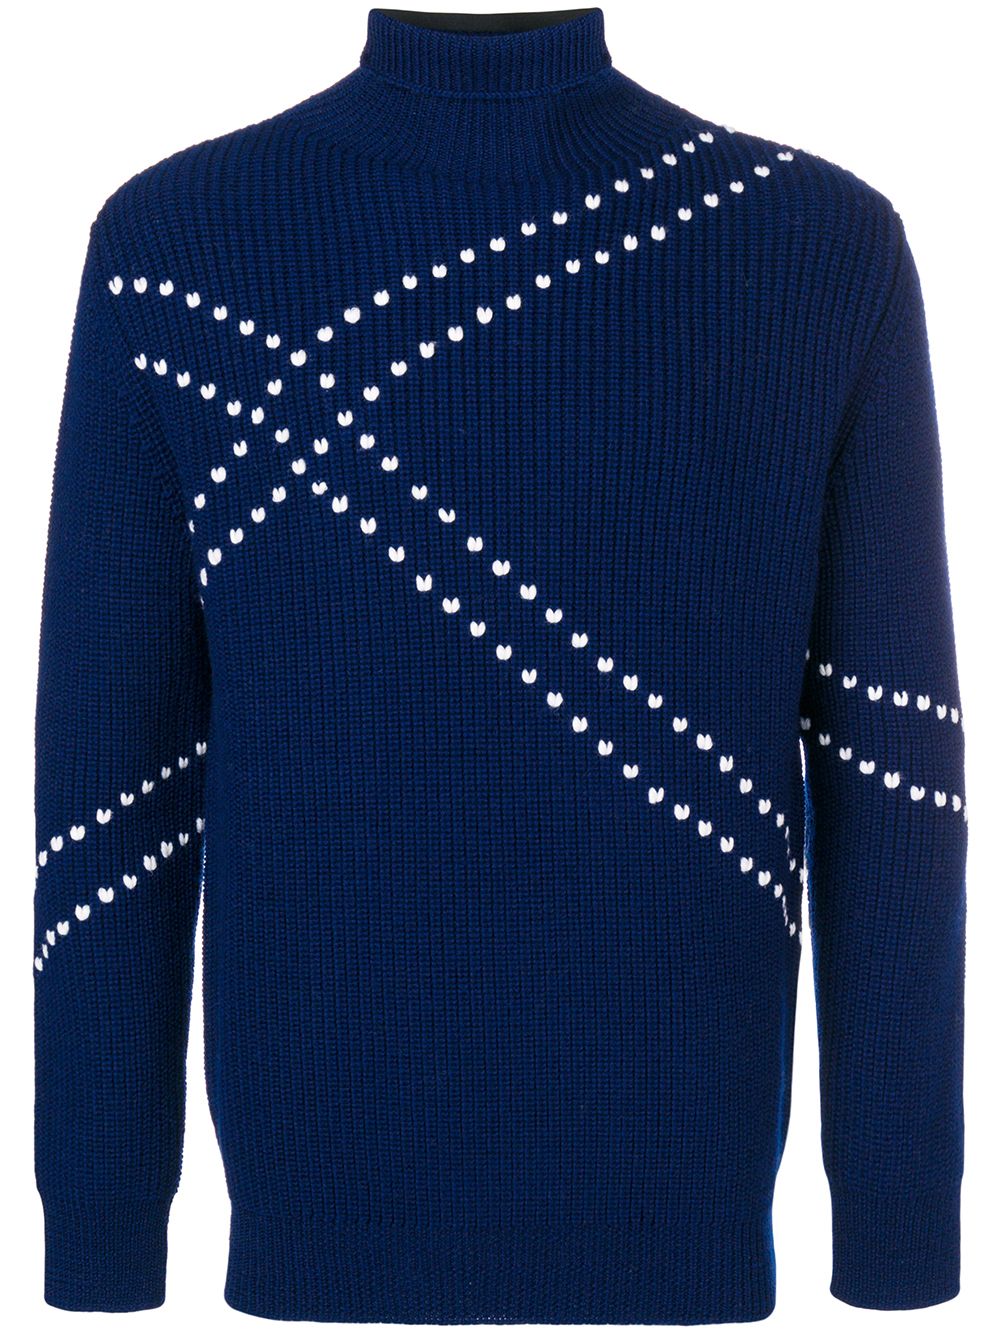 фото Raf simons свитер в рубчик с контрастной строчкой